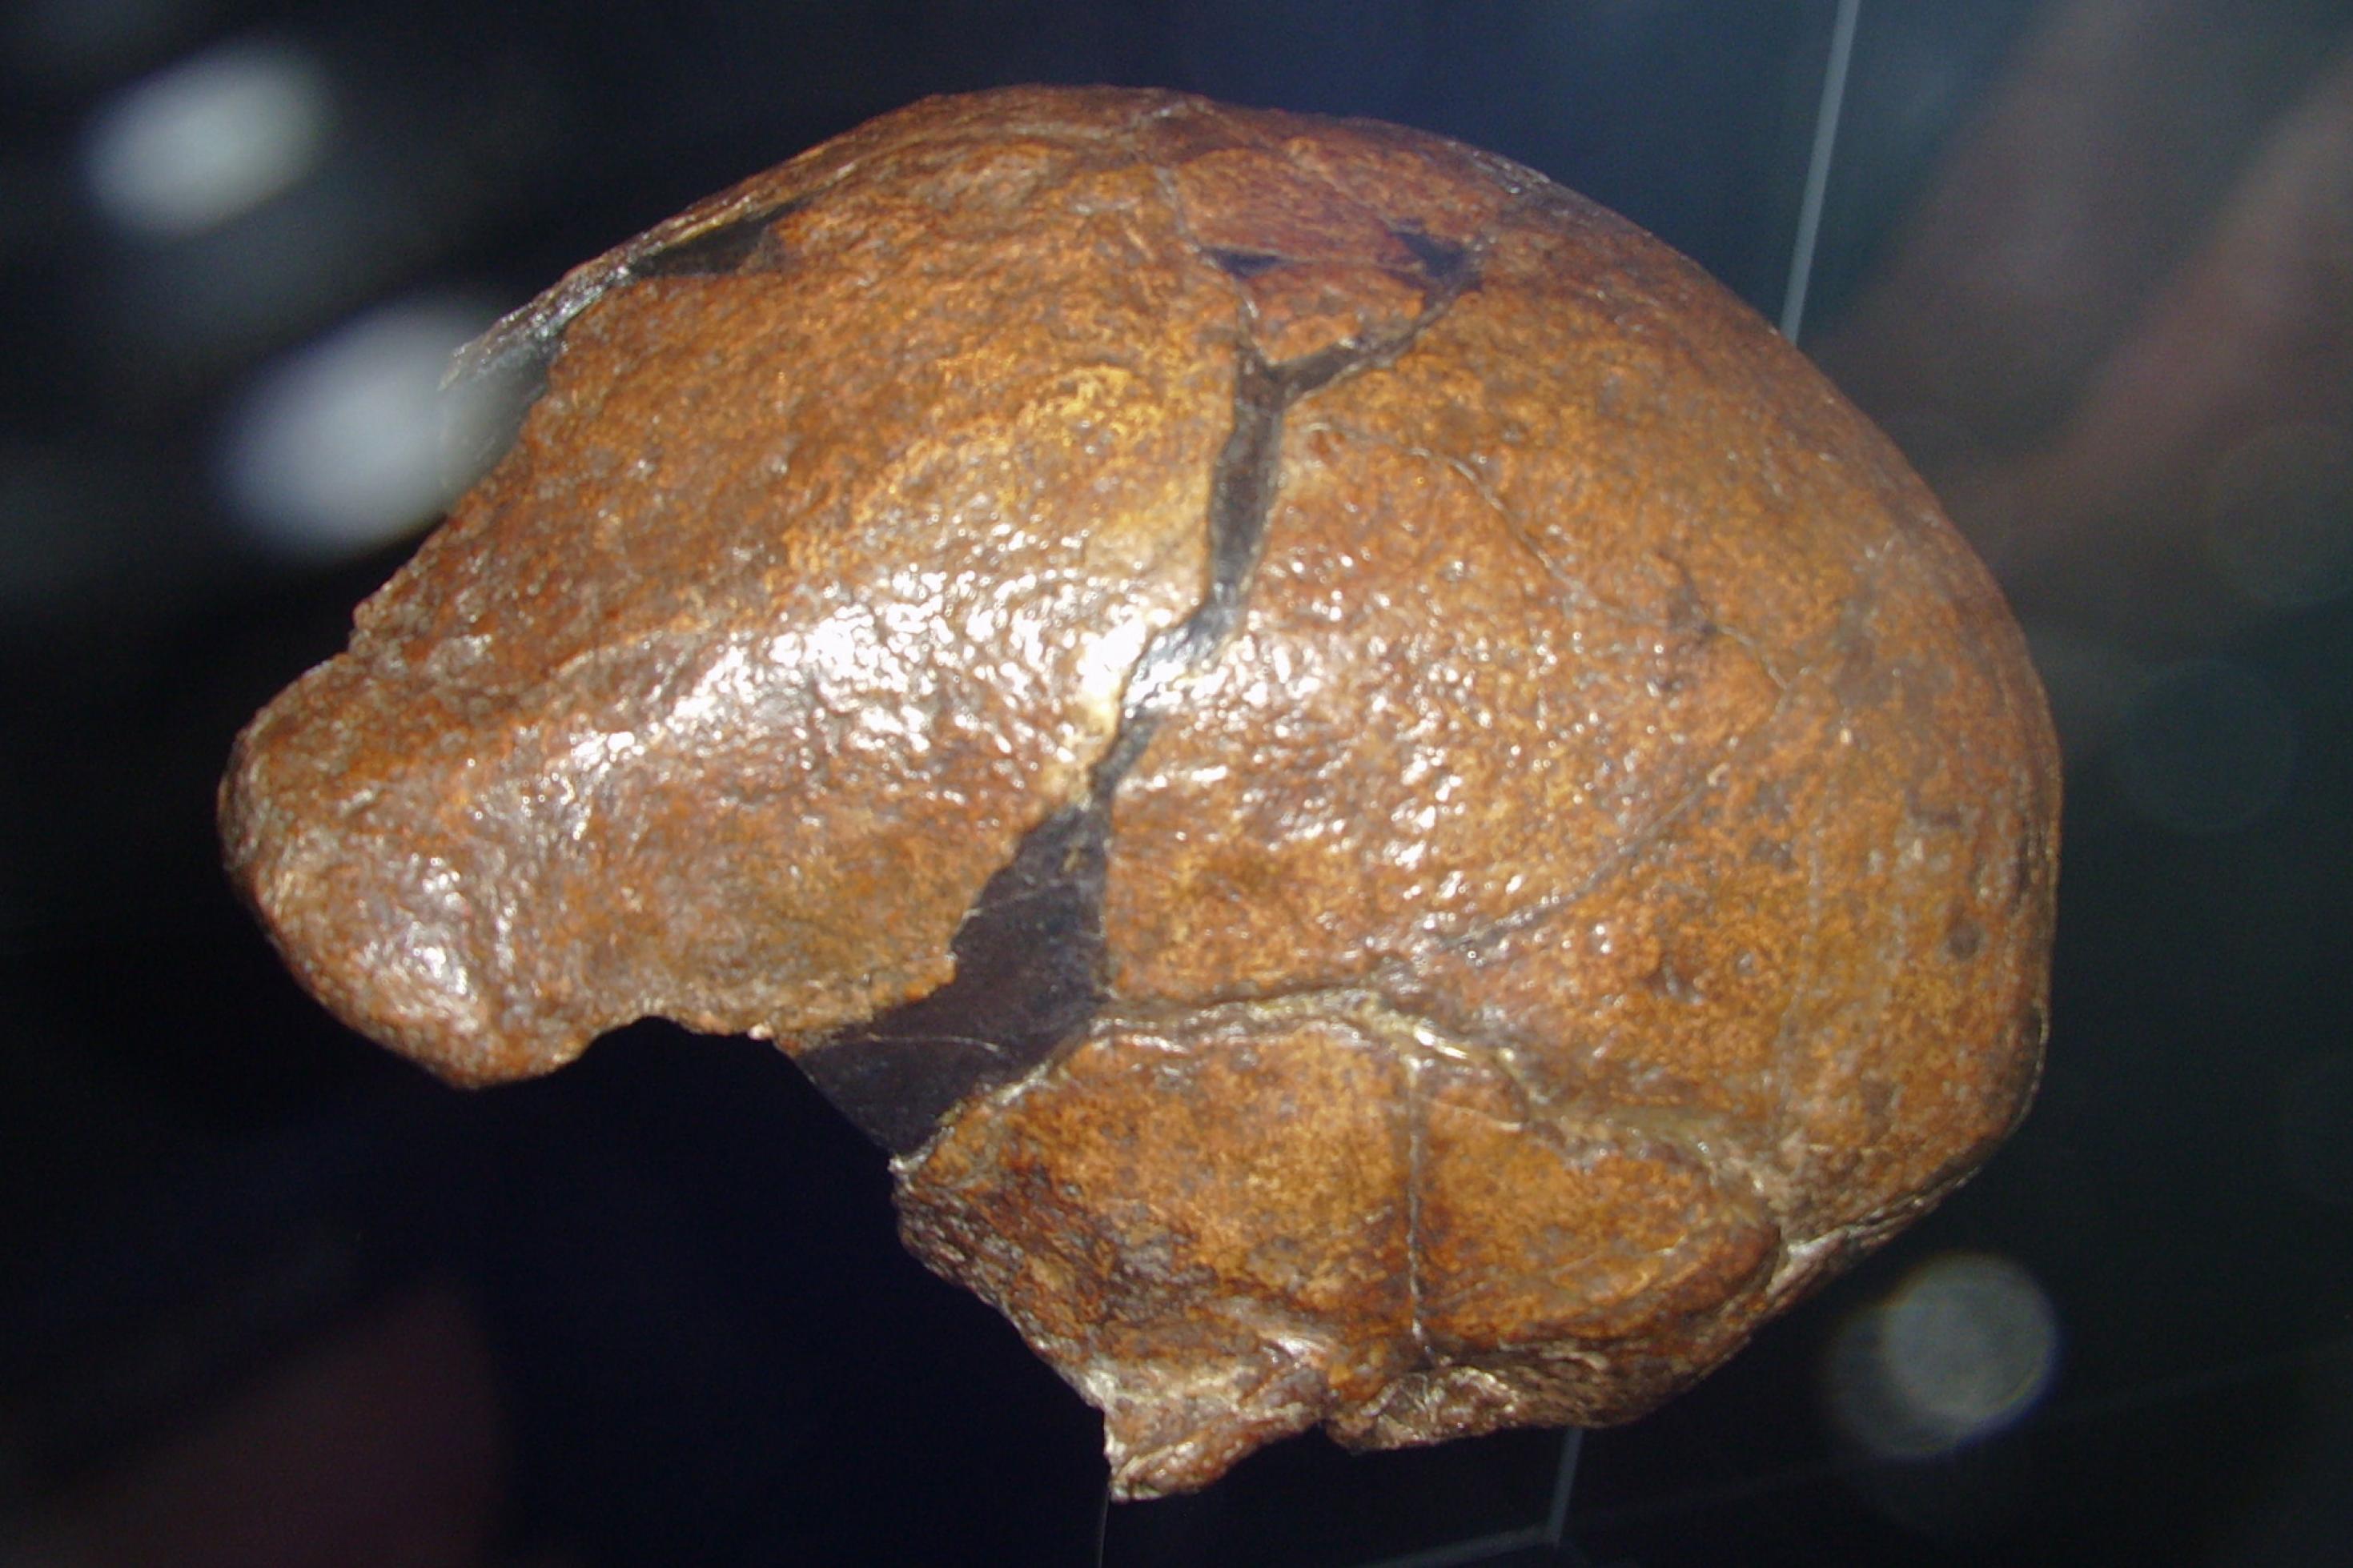 Das Foto zeigt vor schwarzem Hintergrund den oberen Teil eines fossilen menschlichen Schädels in bräunlichen Farbtönen. Auch wenn er nur teilweise erhalten ist, lässt sich links am Schädel der starke Überaugenwulst gut zu erkennen.